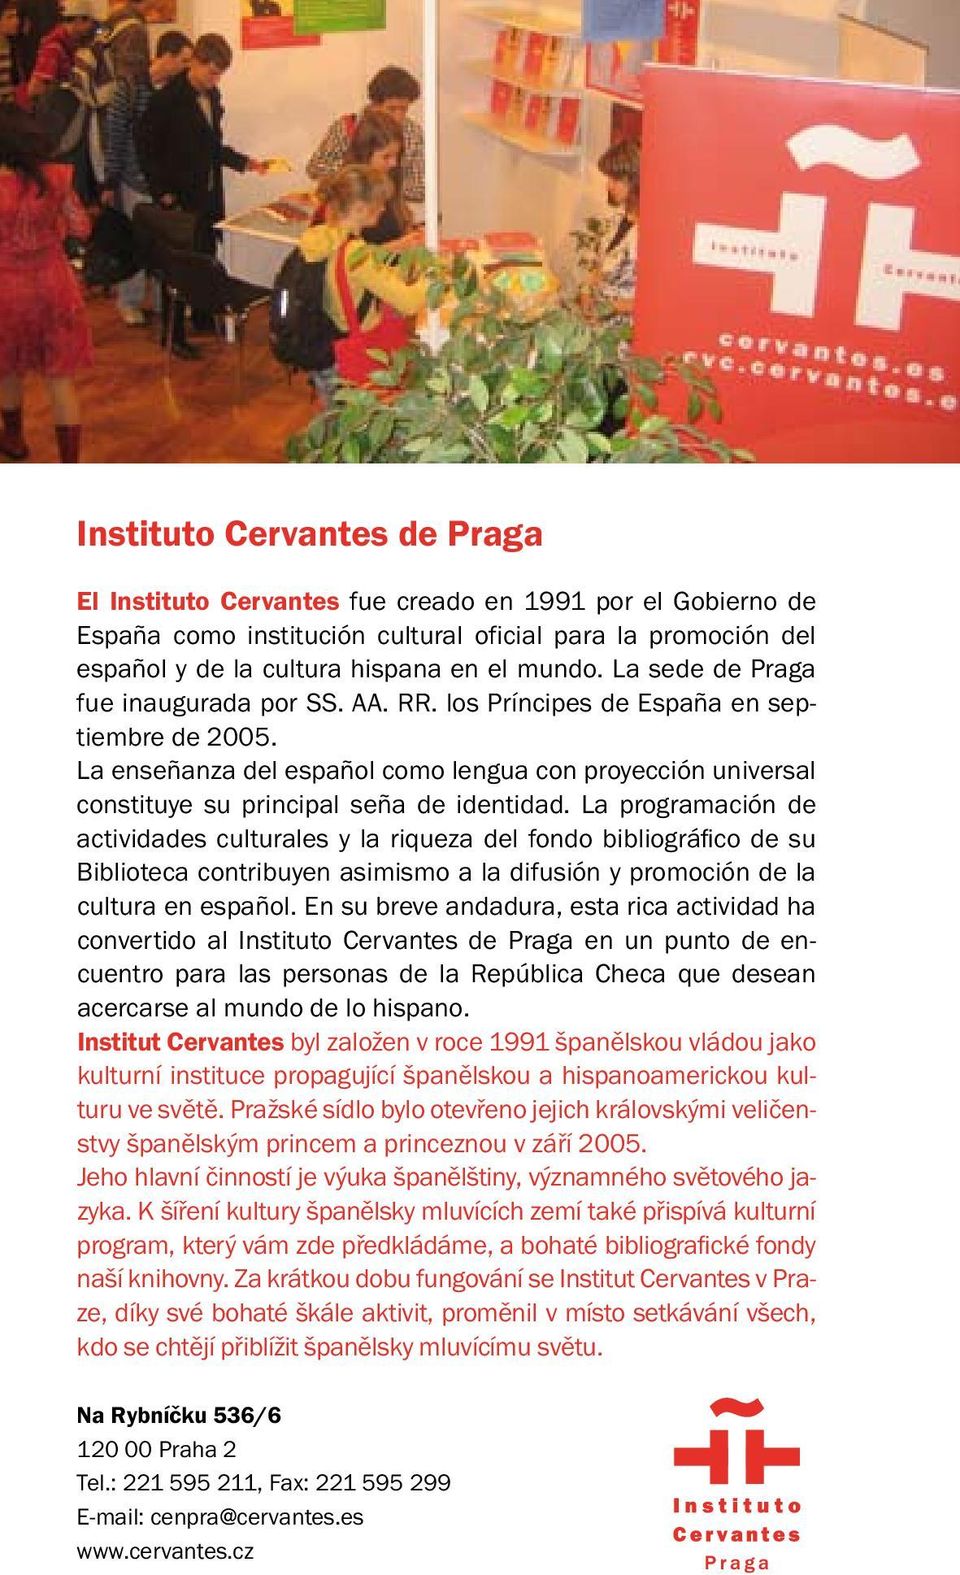 La programación de actividades culturales y la riqueza del fondo bibliográfico de su Biblioteca contribuyen asimismo a la difusión y promoción de la cultura en español.